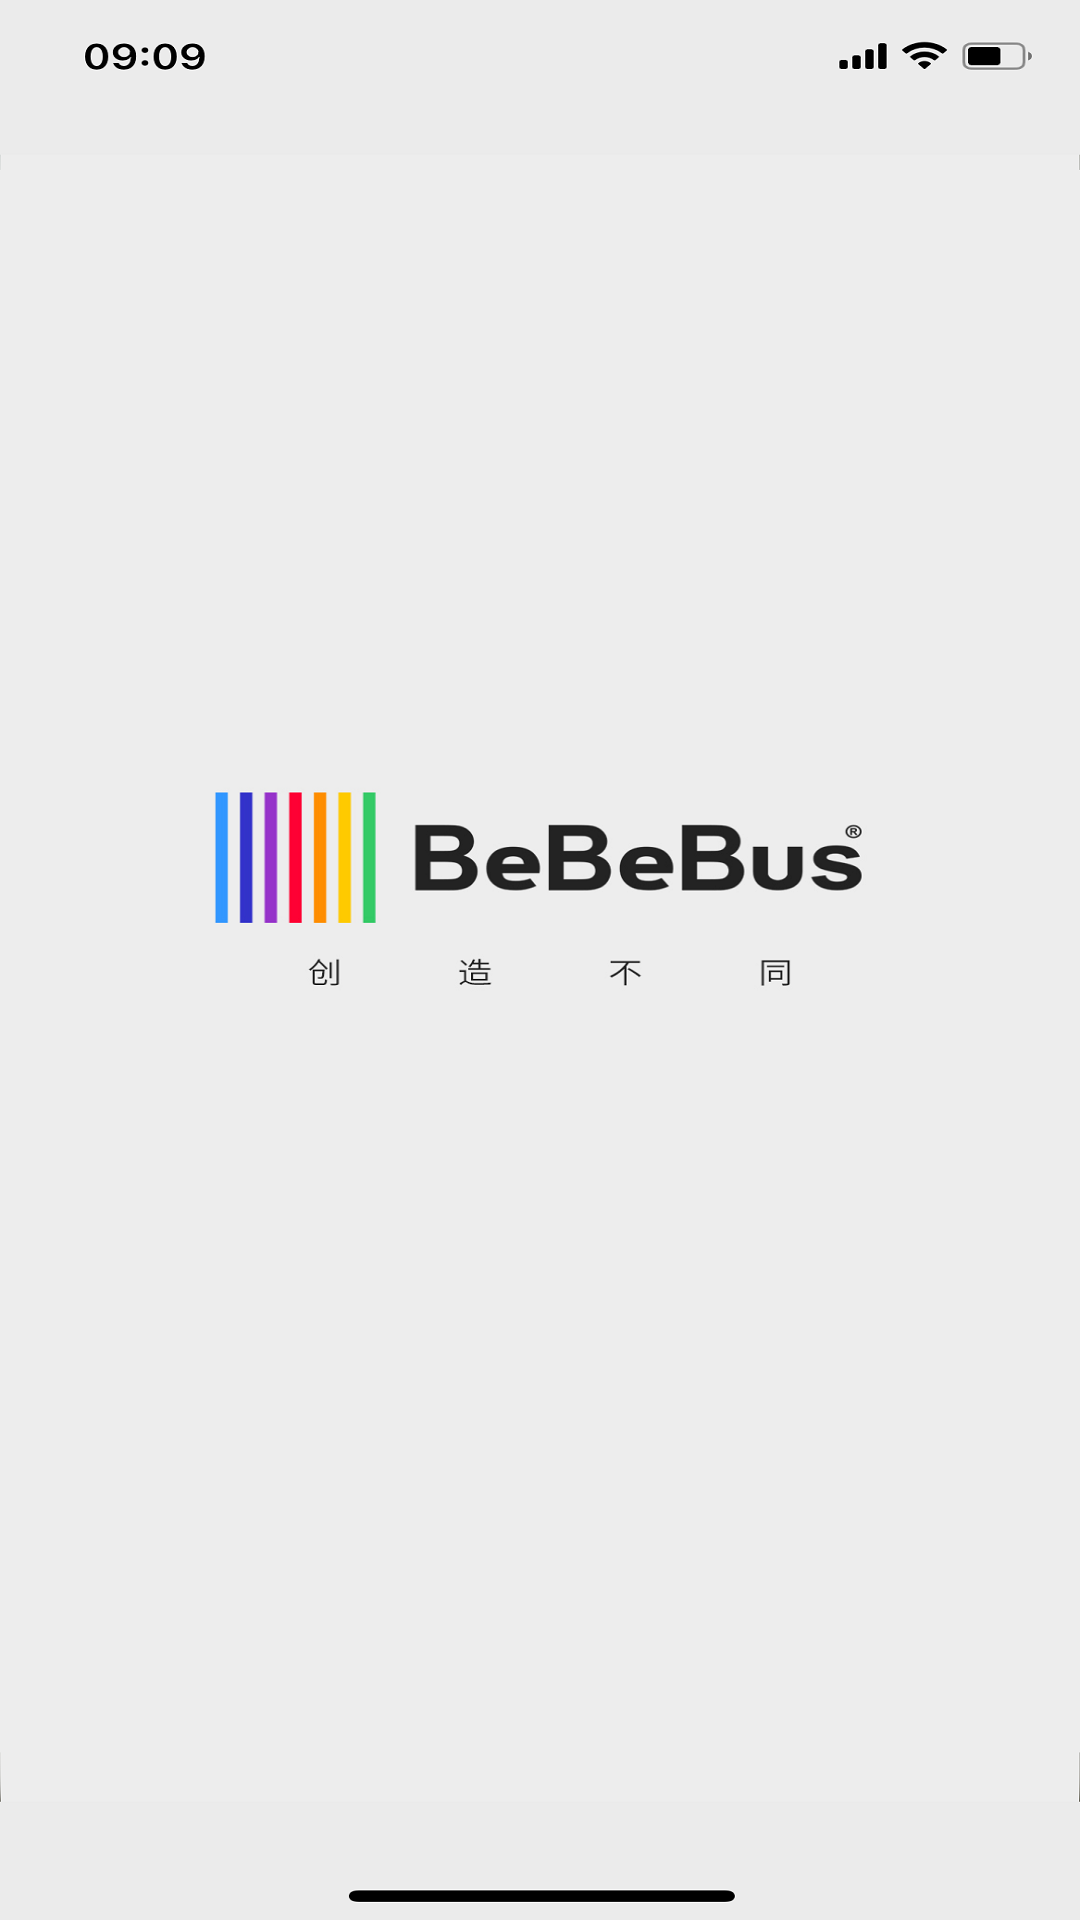 BeBeBus